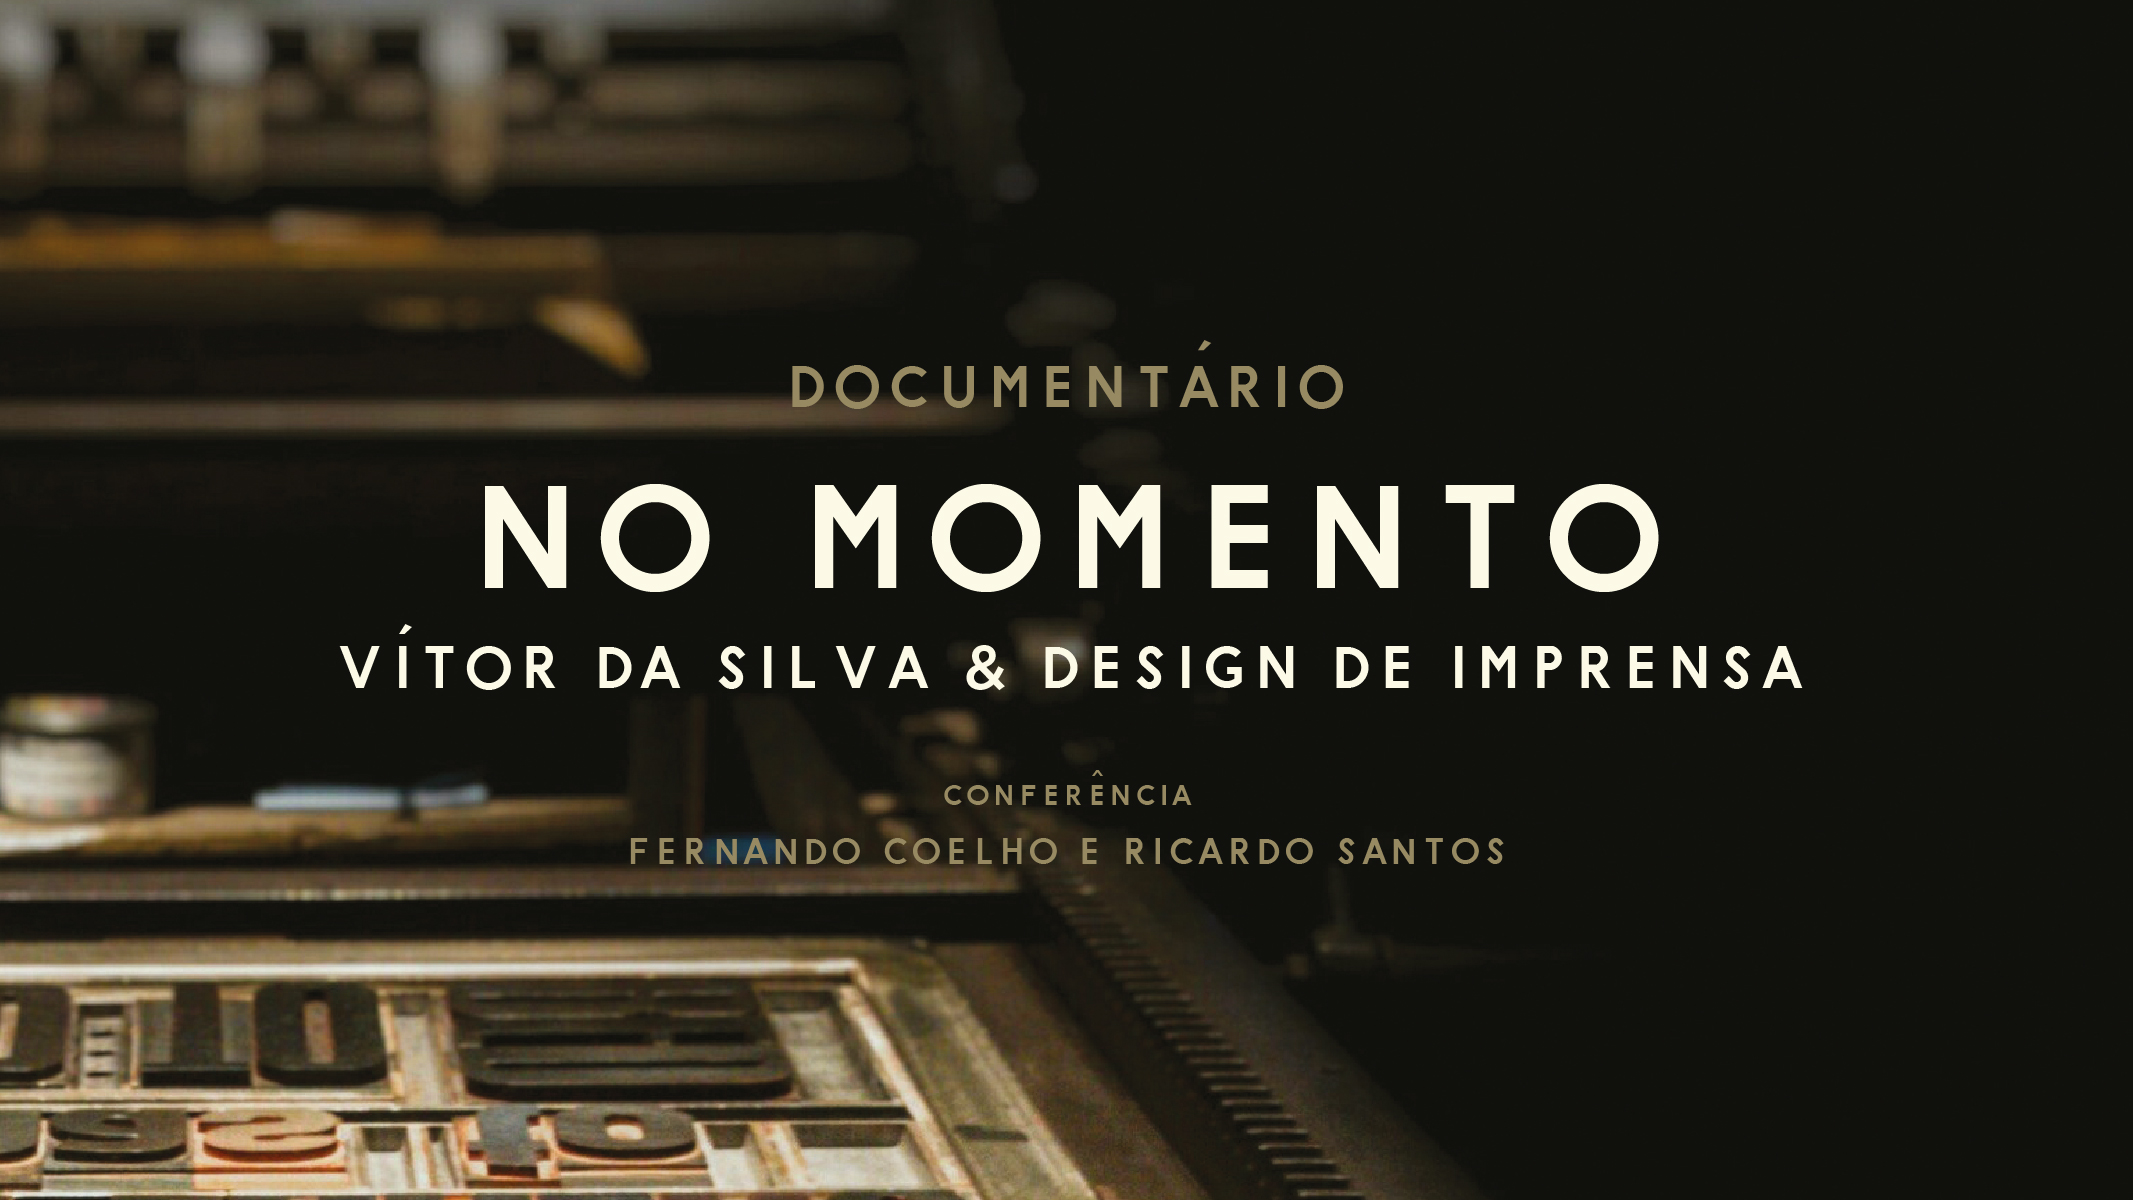 Documentário e Conferência “No Momento: Vítor da Silva & Design de Imprensa”